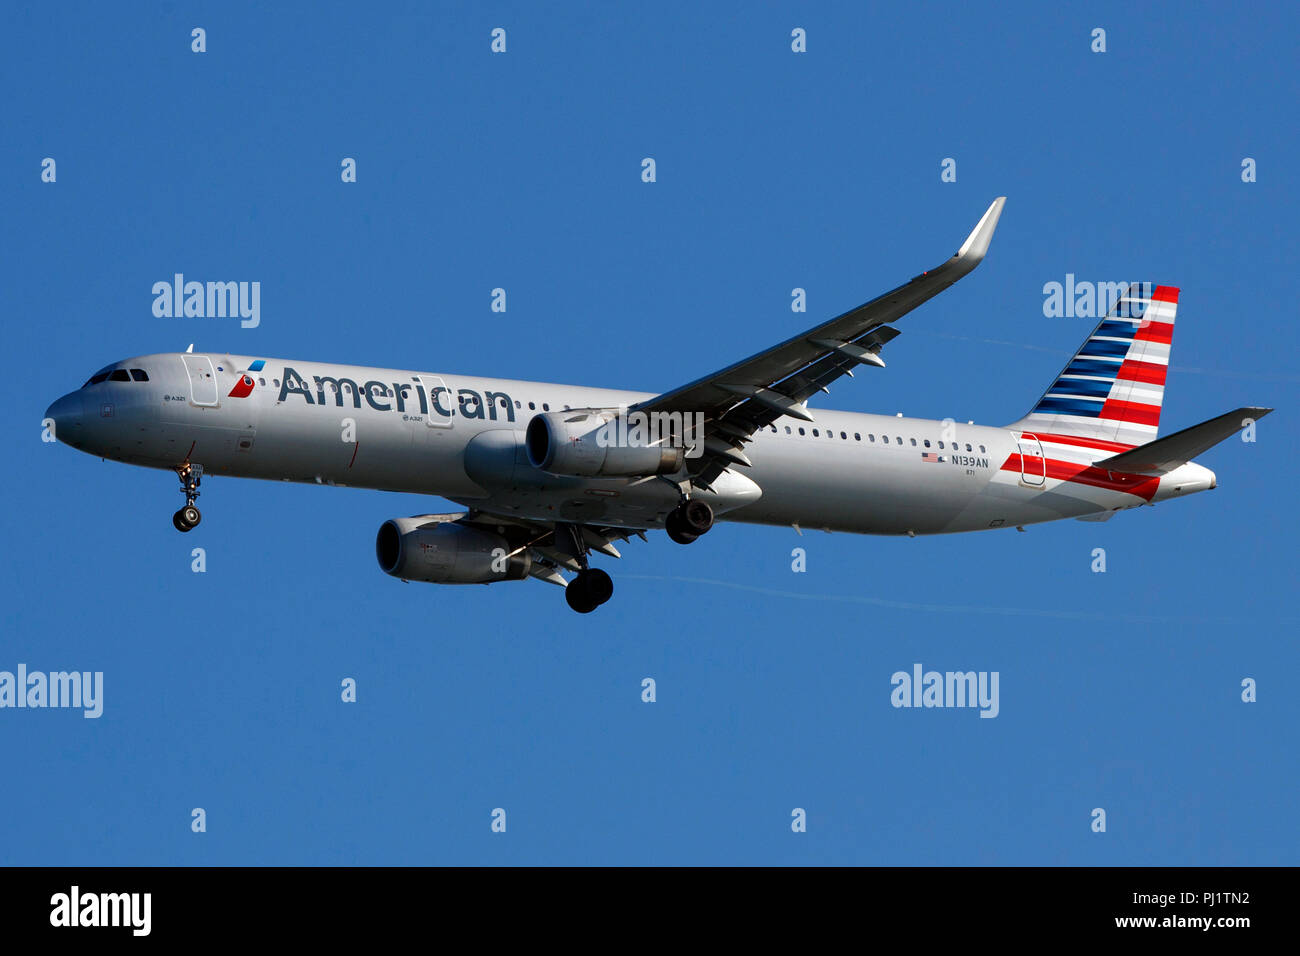 Airbus A321-231 (N139un) operati da American Airlines sull approccio all'Aeroporto Internazionale di San Francisco (SFO), San Francisco, California, Stati Uniti d'America Foto Stock